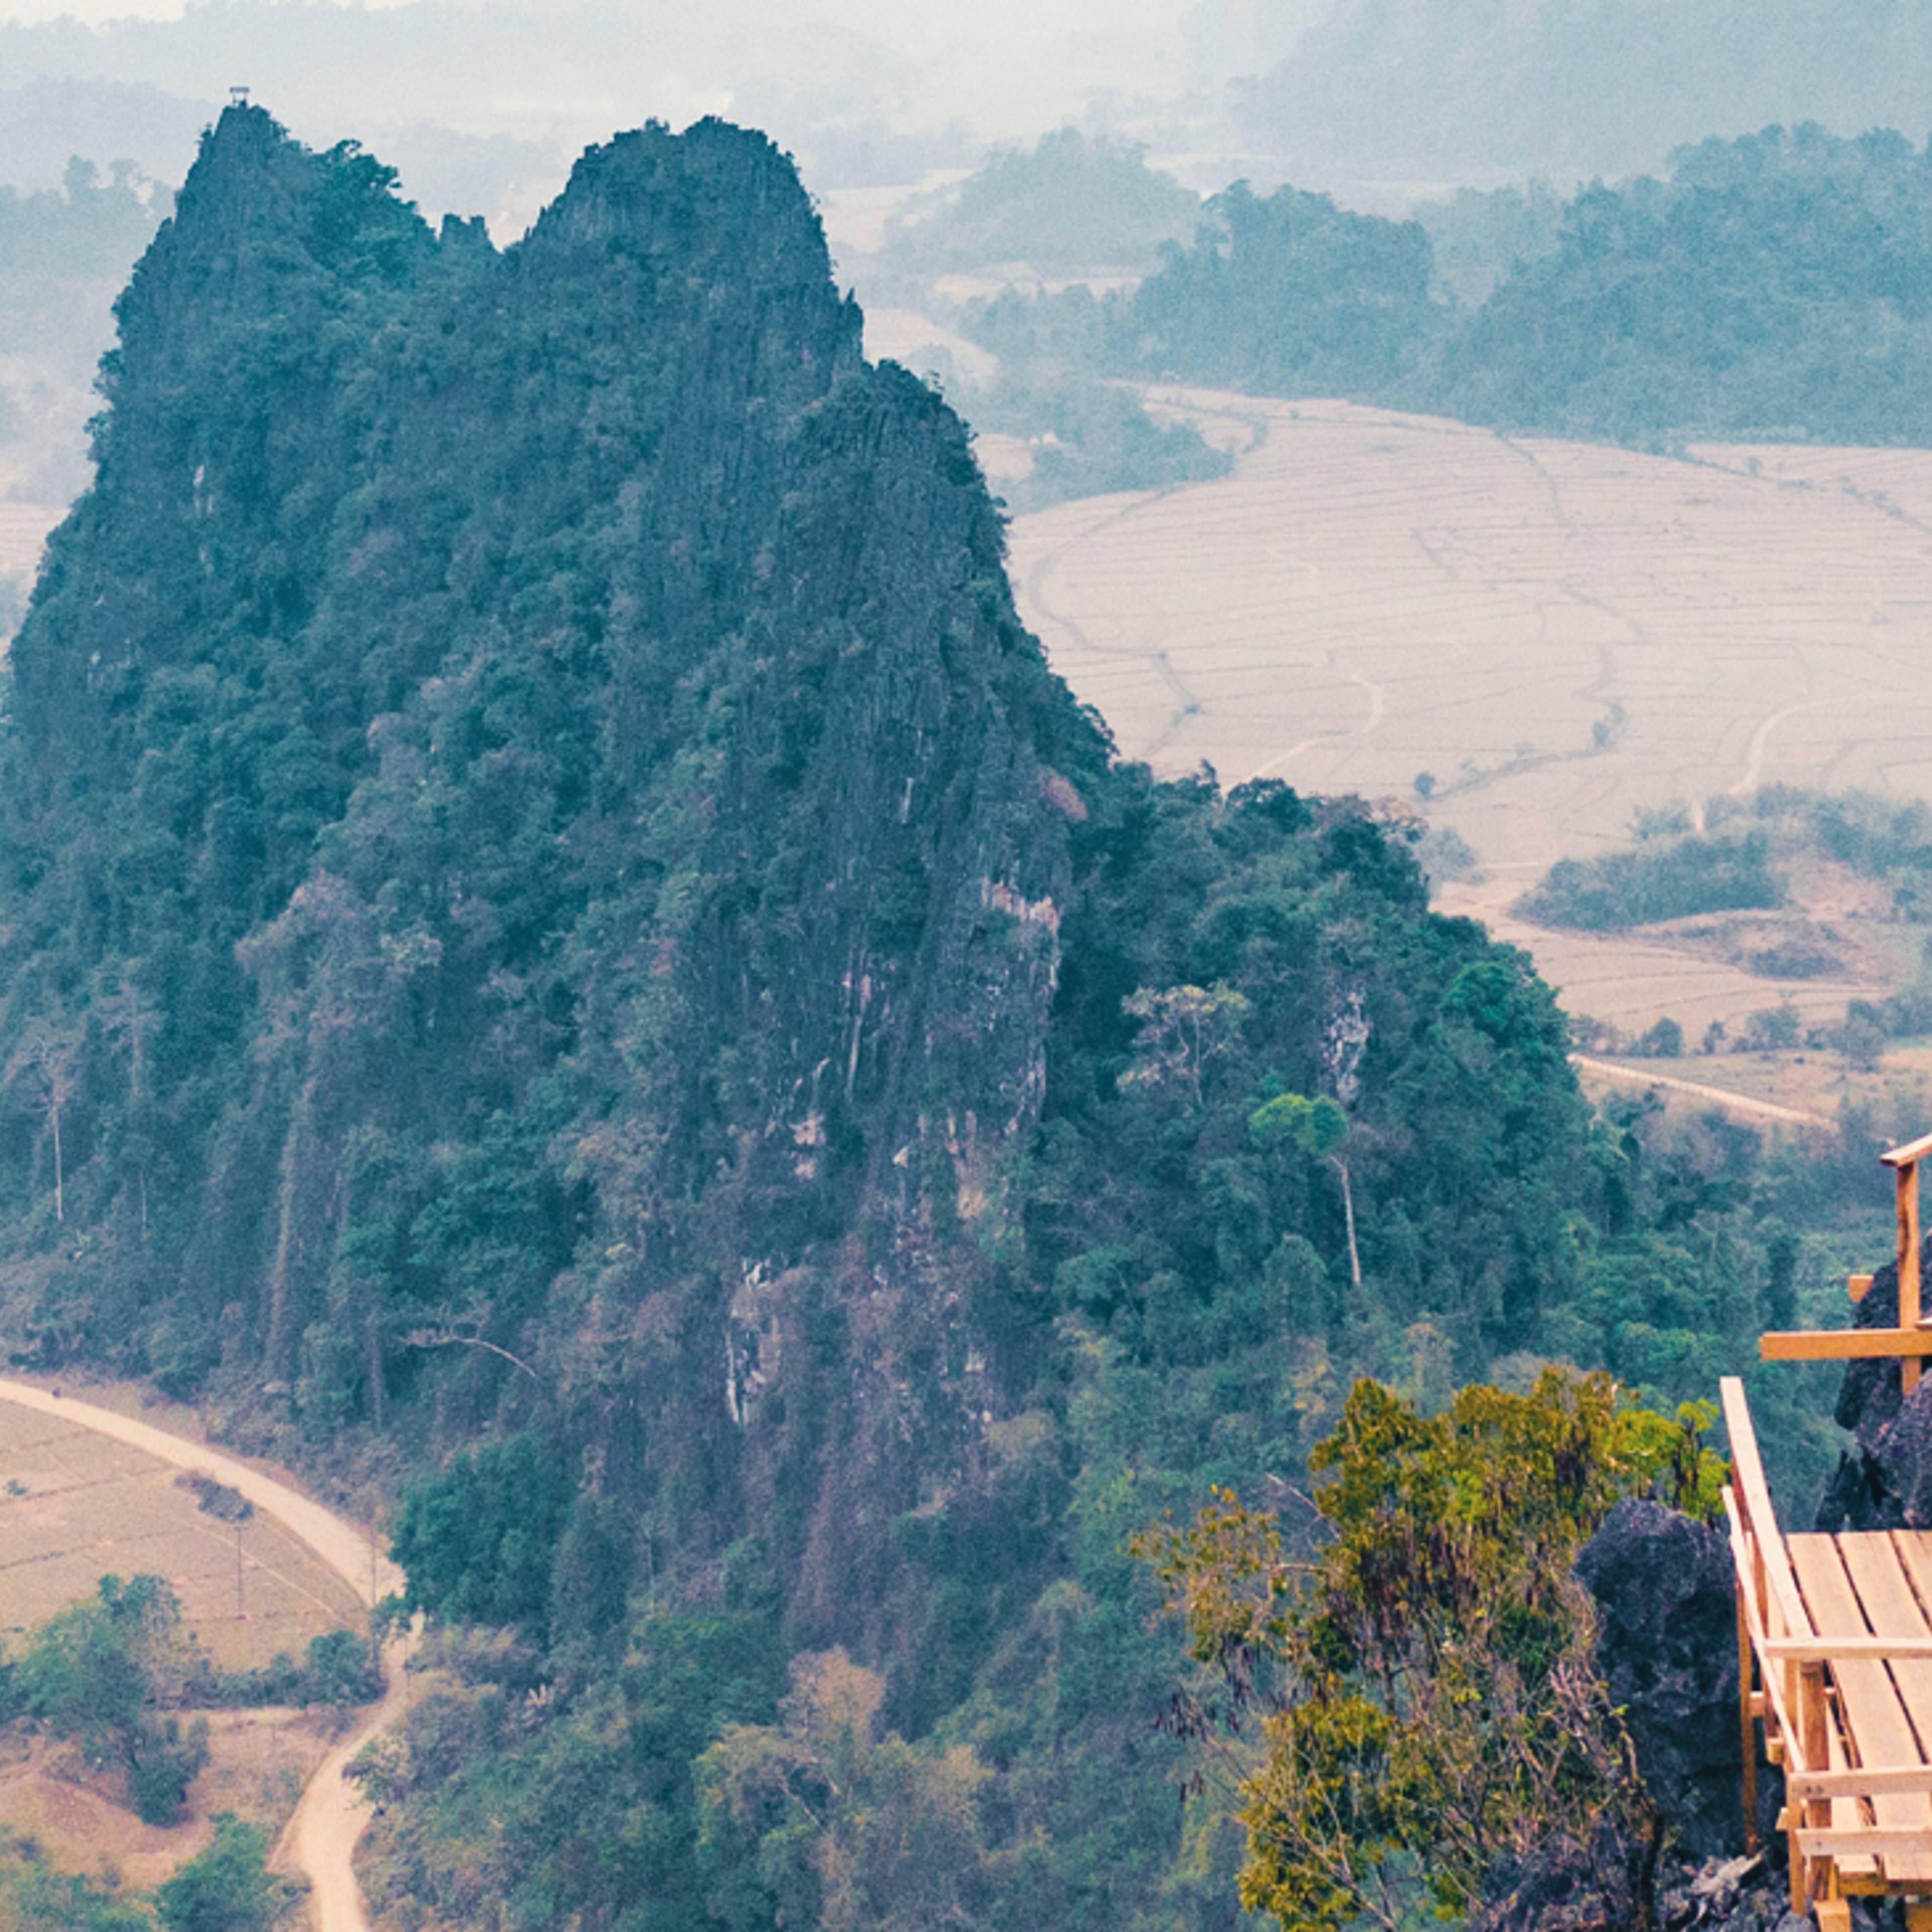 Trek au Laos